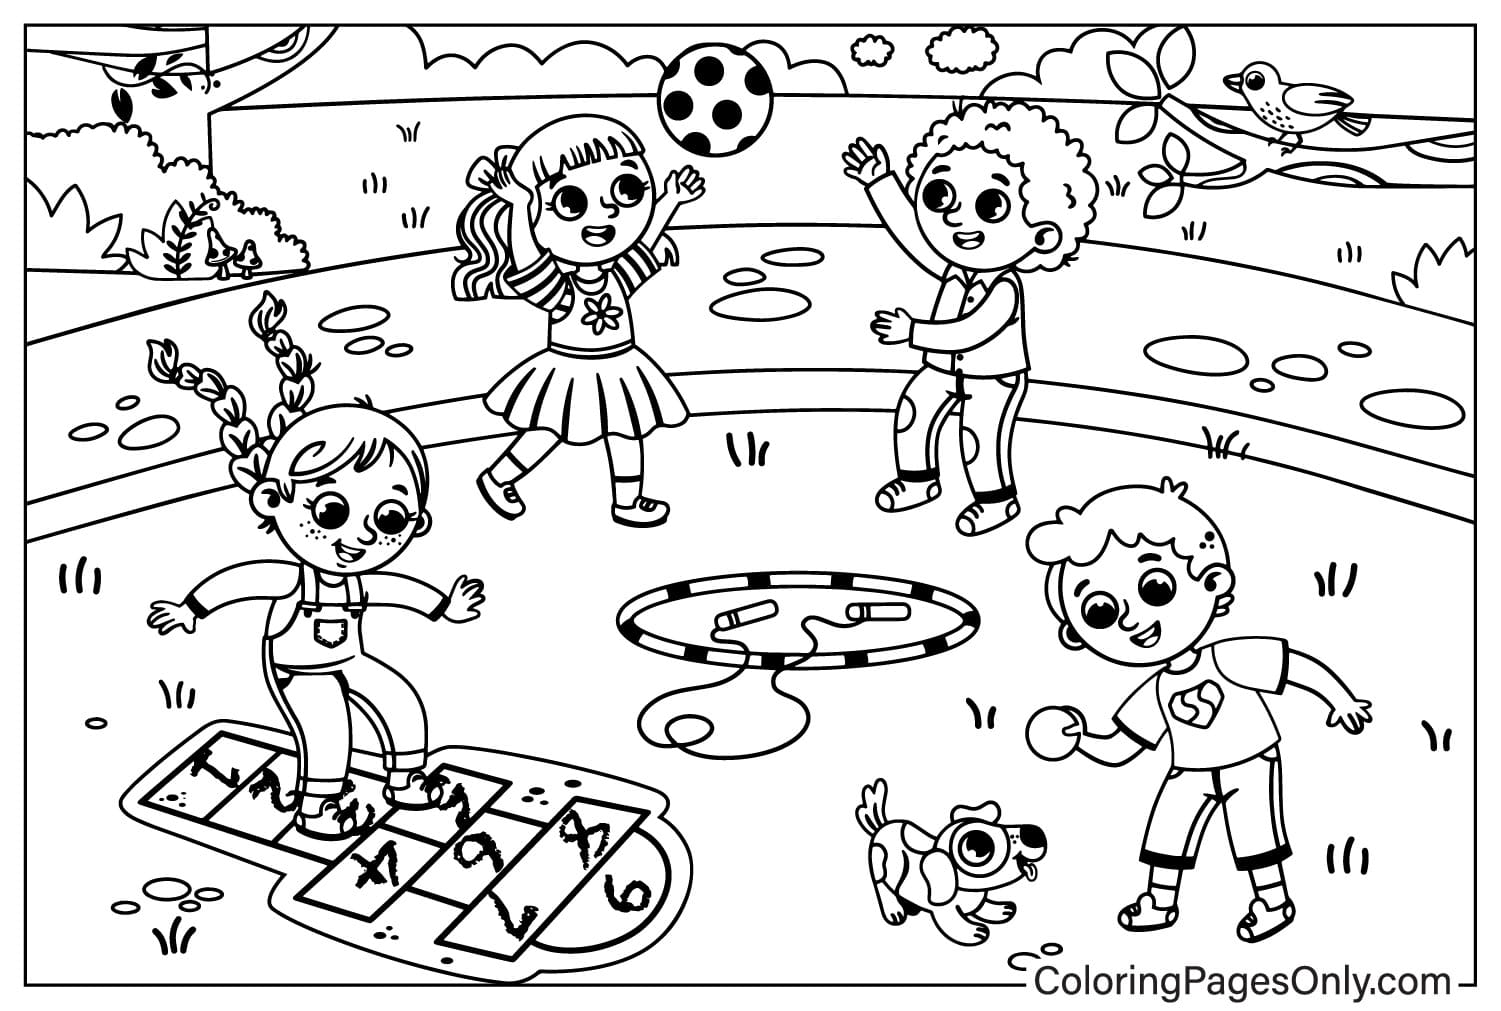 Página para colorir do Playground para impressão no Playground